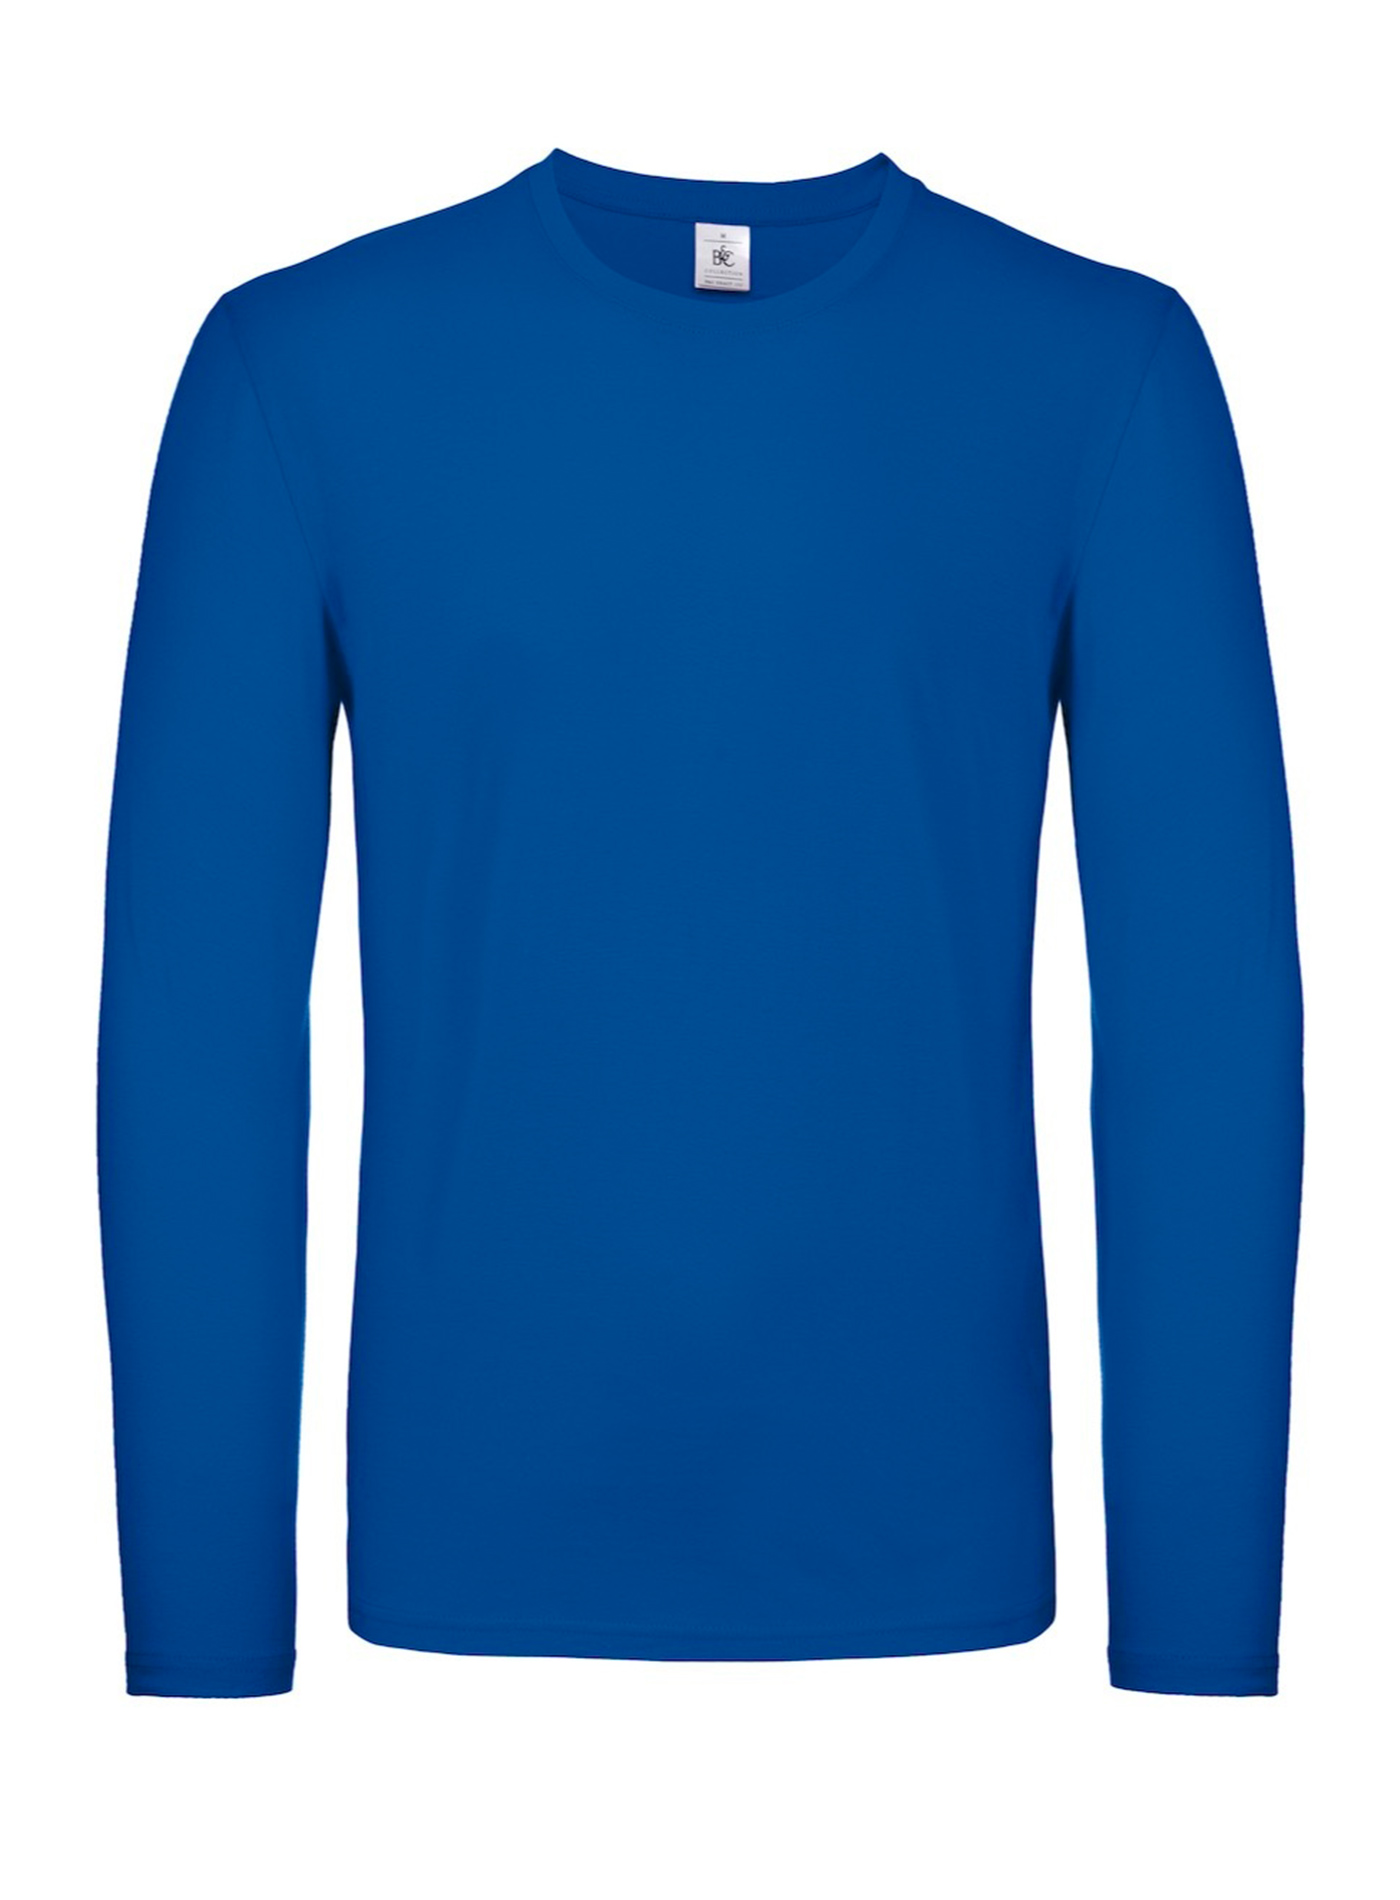 Tričko s dlouhým rukávem B&C Collection - královská modrá 4XL